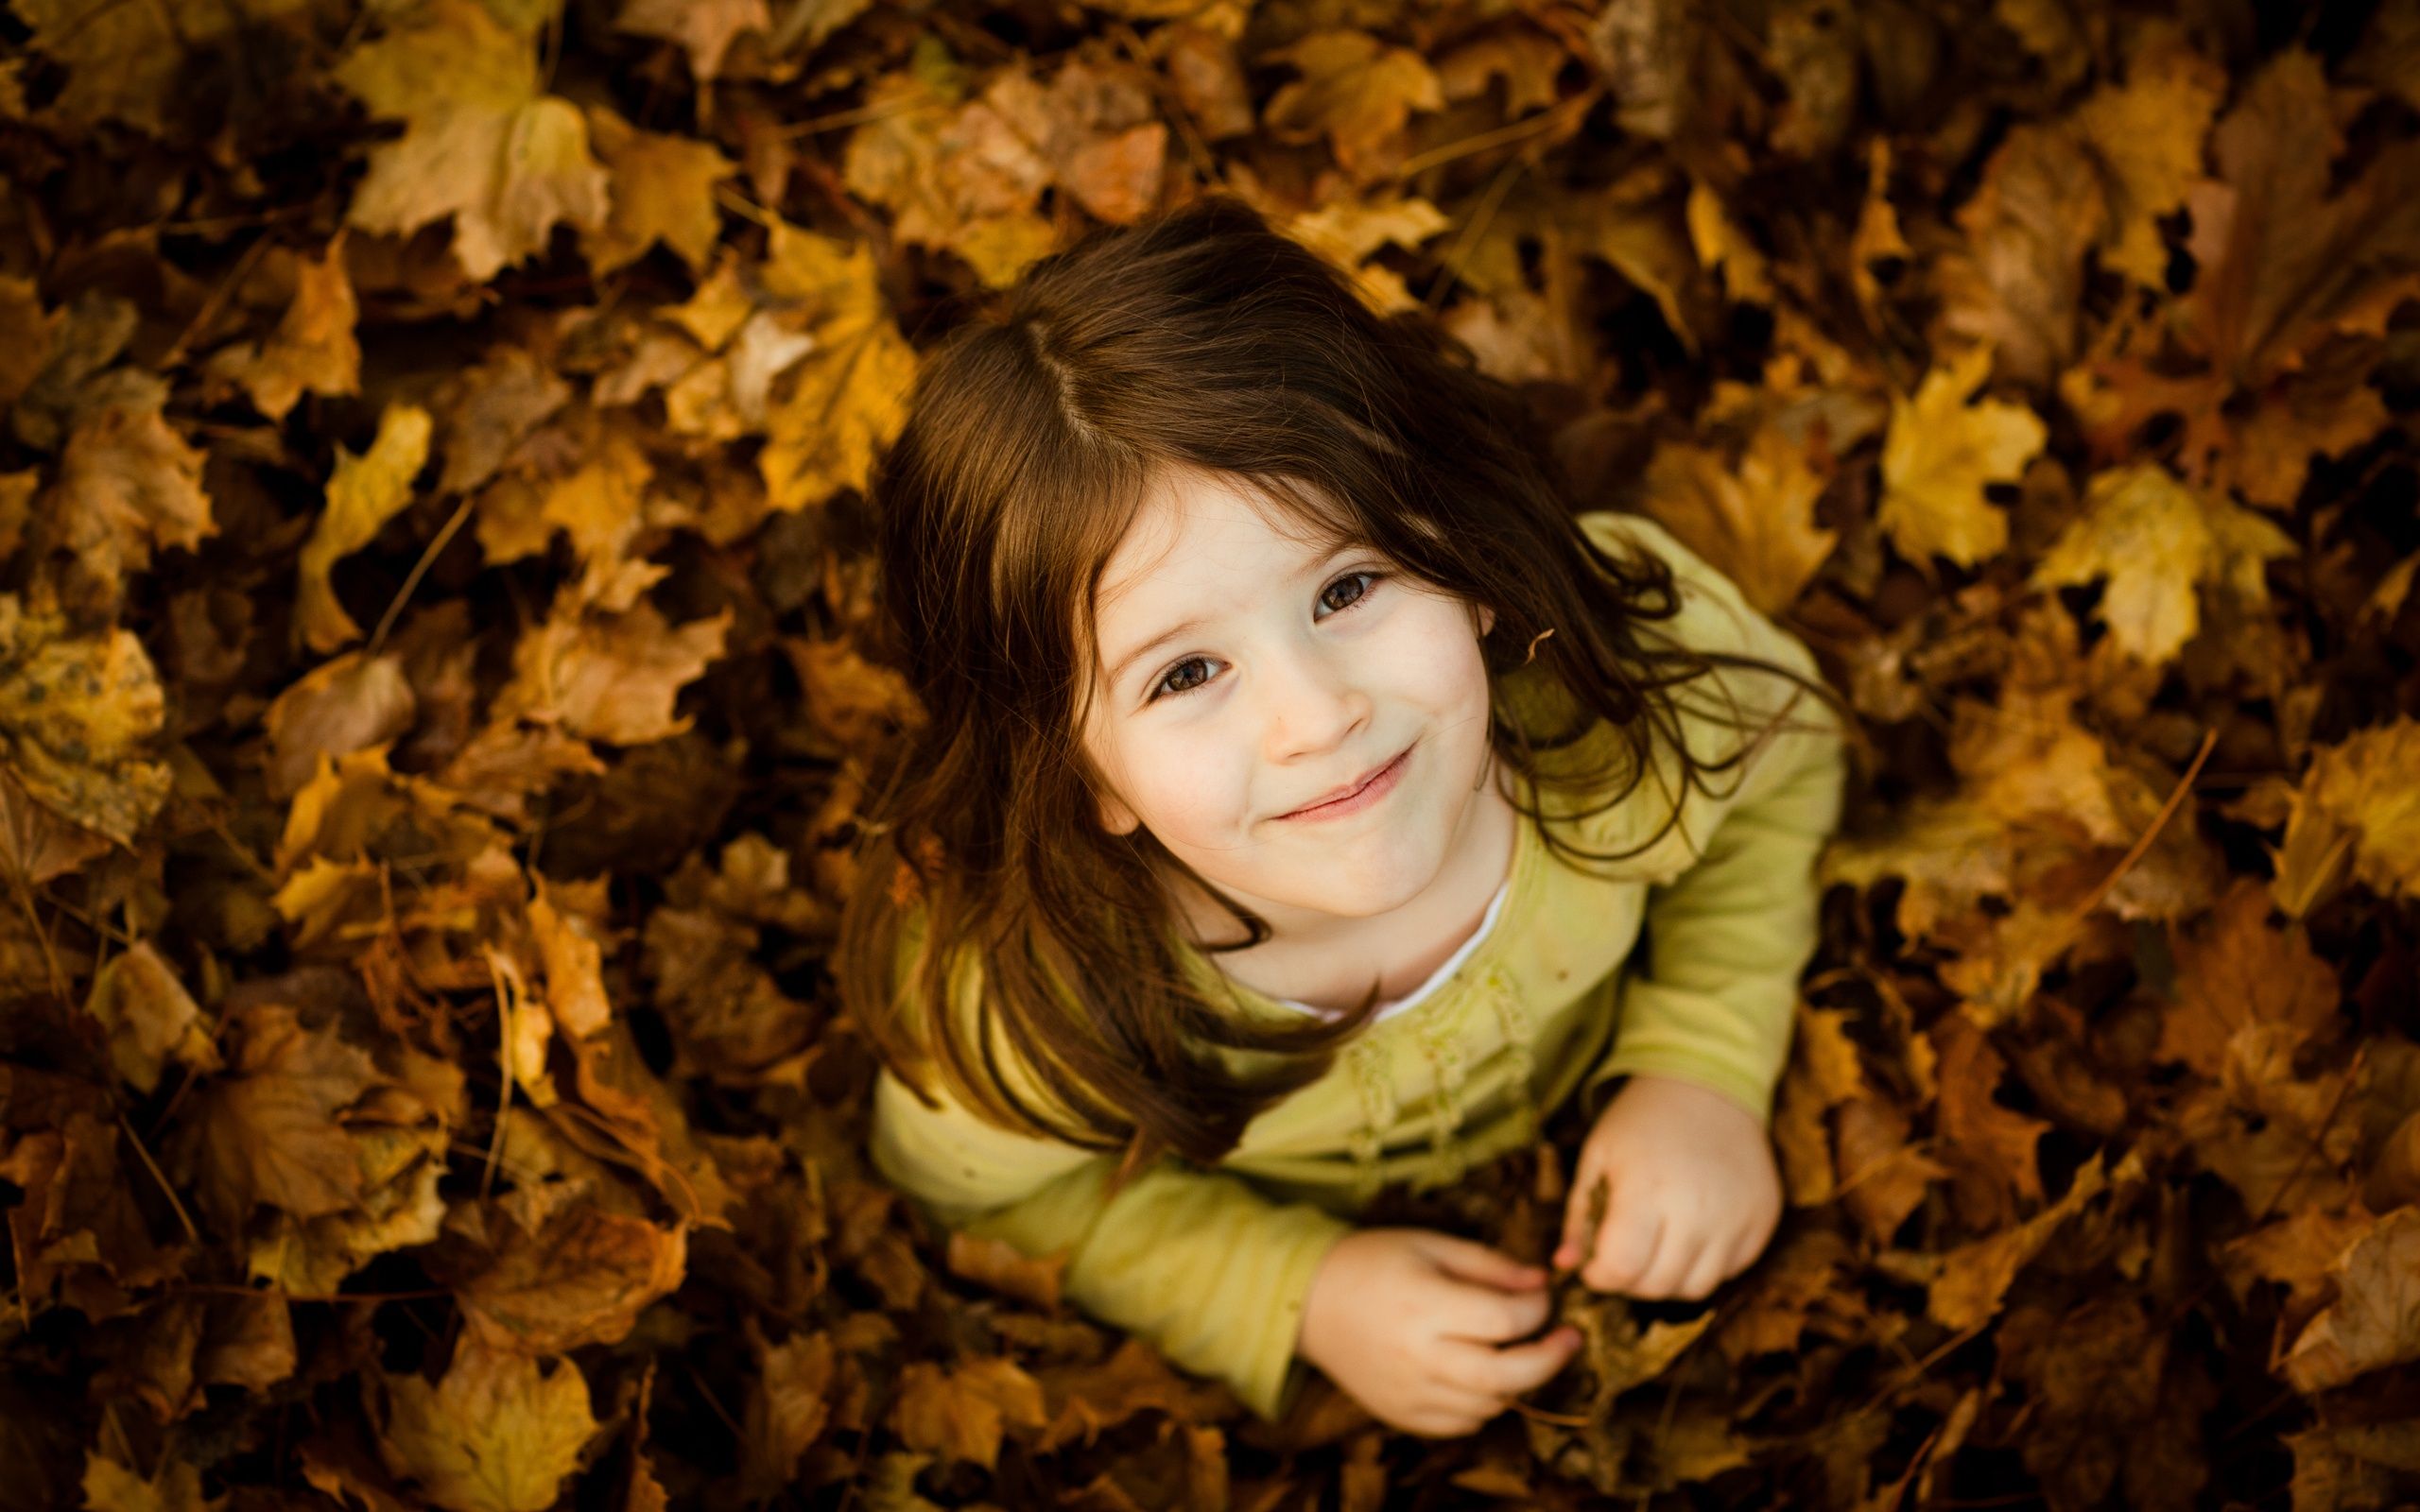 Cute Girl on Leaves